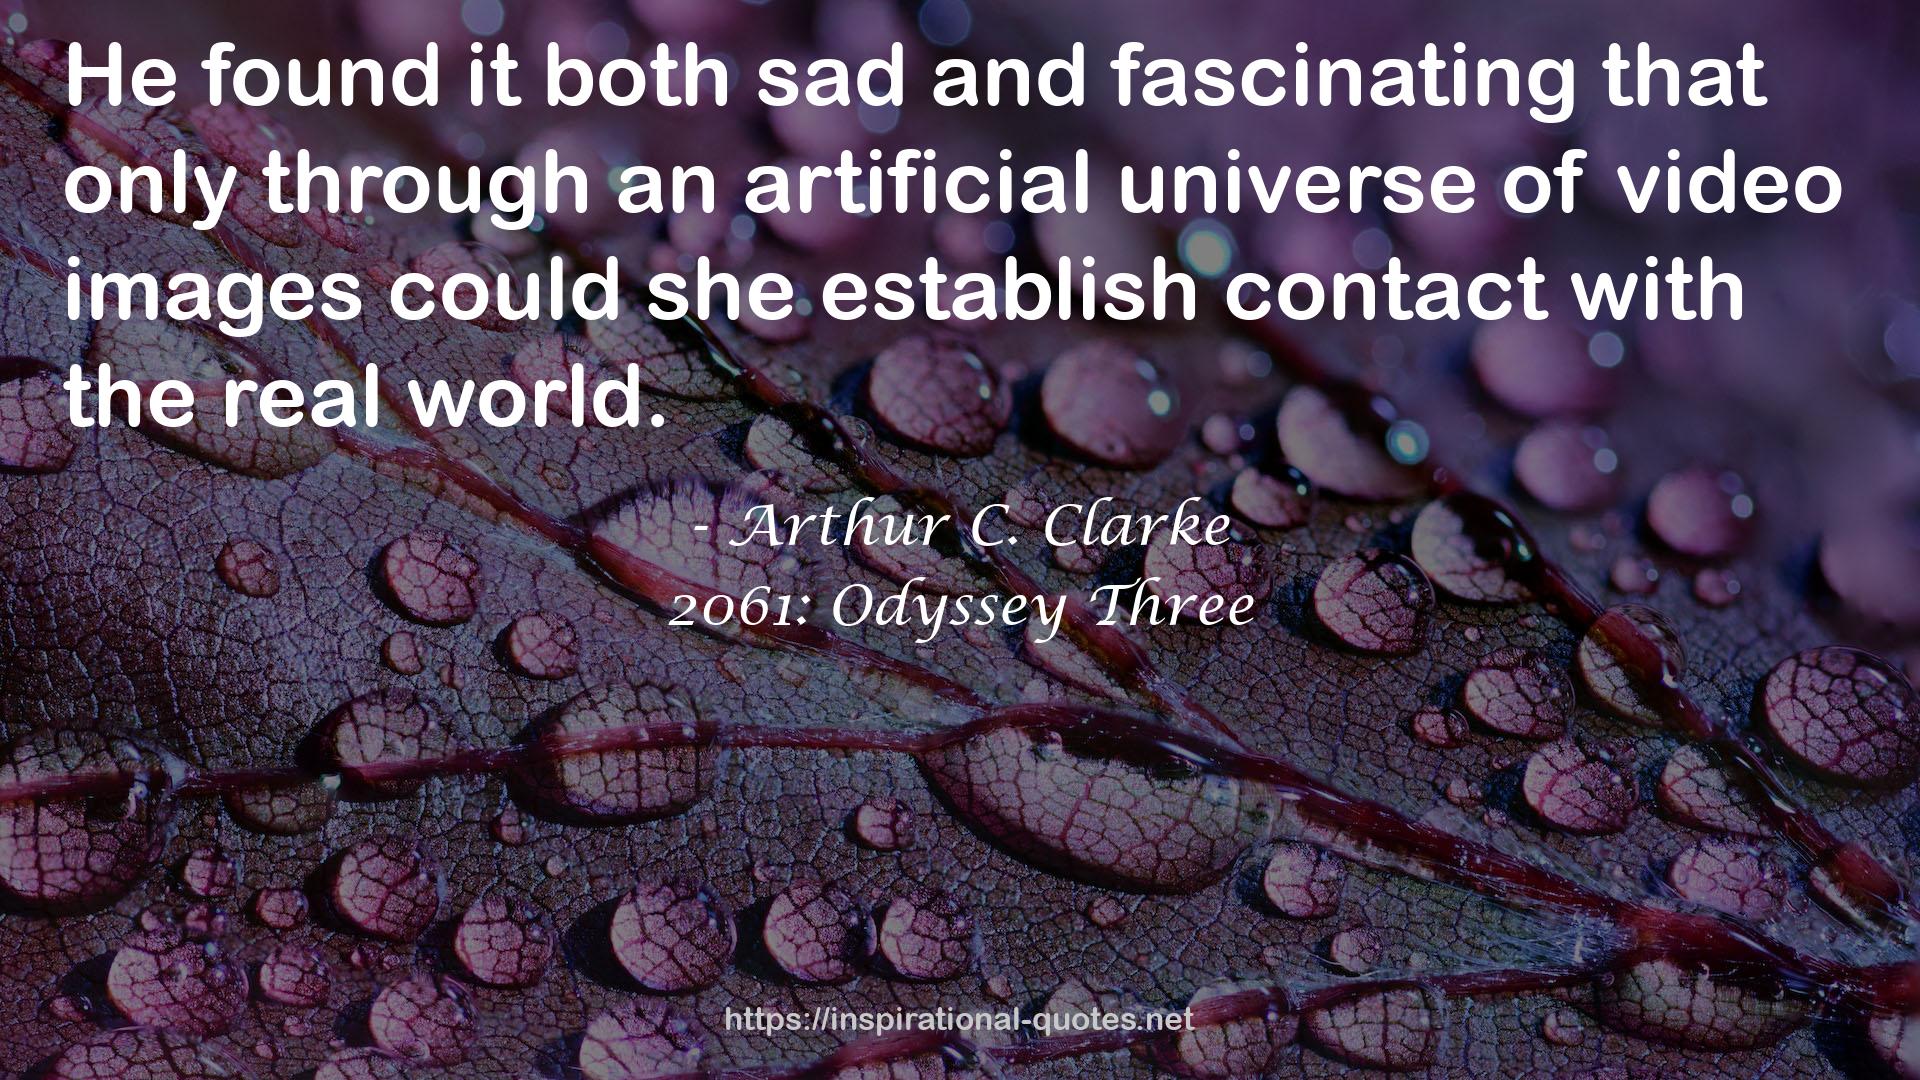 Arthur C. Clarke QUOTES